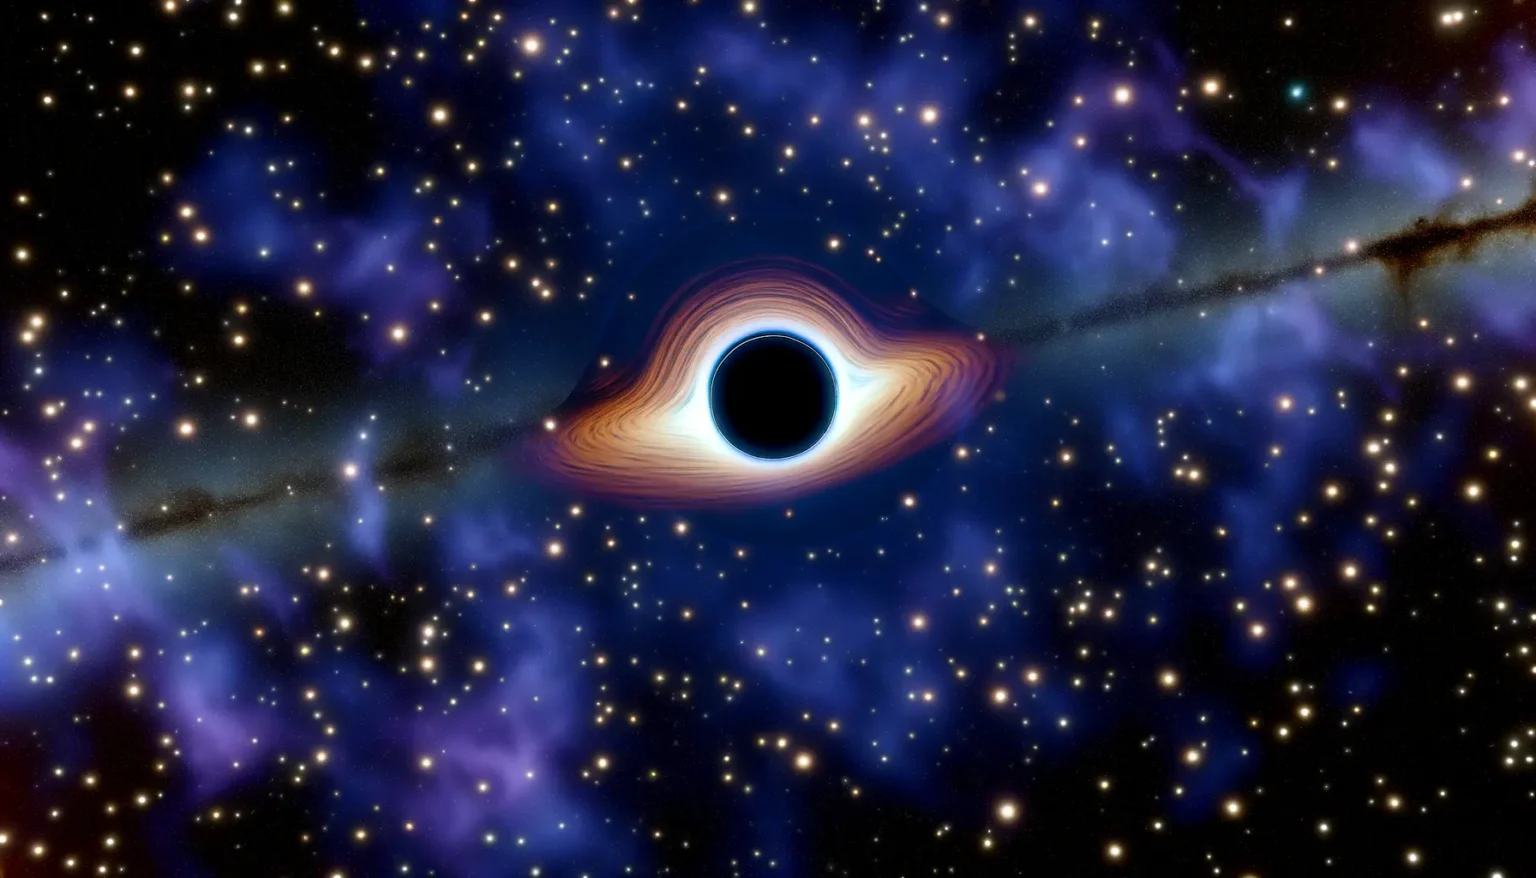 Digitale Darstellung eines Schwarzen Lochs mit Akkretionsscheibe im Weltraum, umgeben von zahlreichen Sternen und interstellarer Materie.